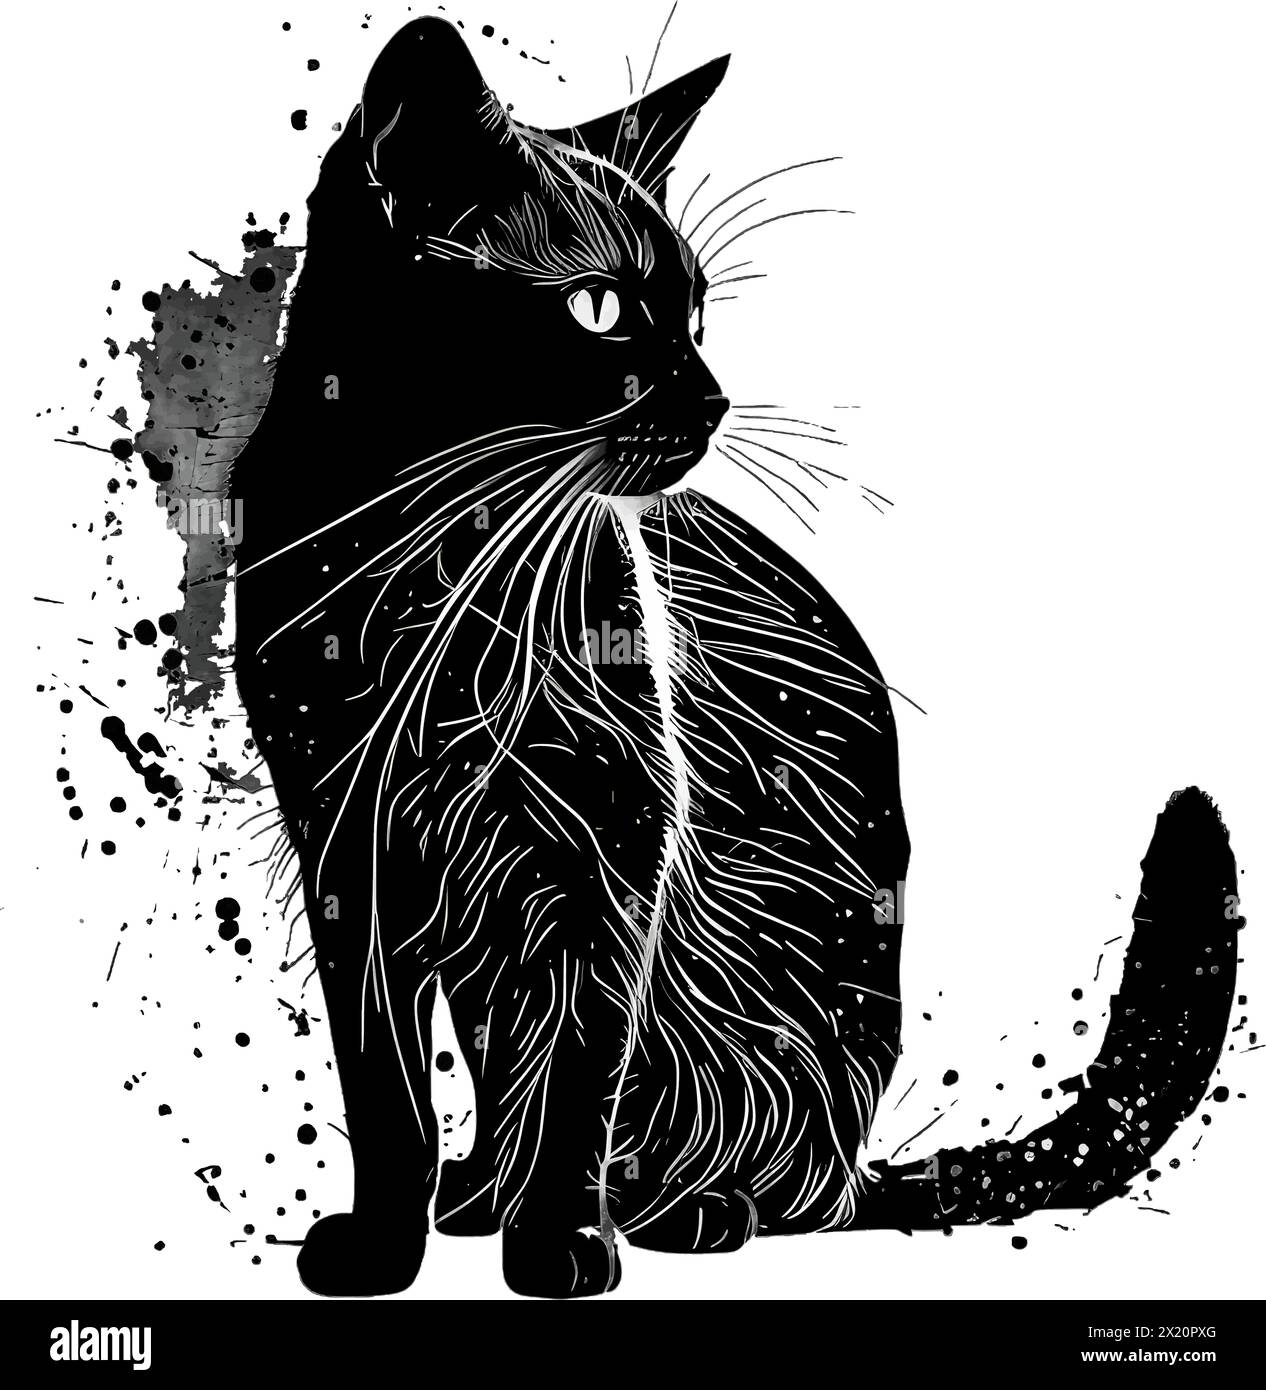 Illustration vectorielle d'un chat en silhouette noire sur un fond blanc propre, capturant des formes gracieuses. Illustration de Vecteur